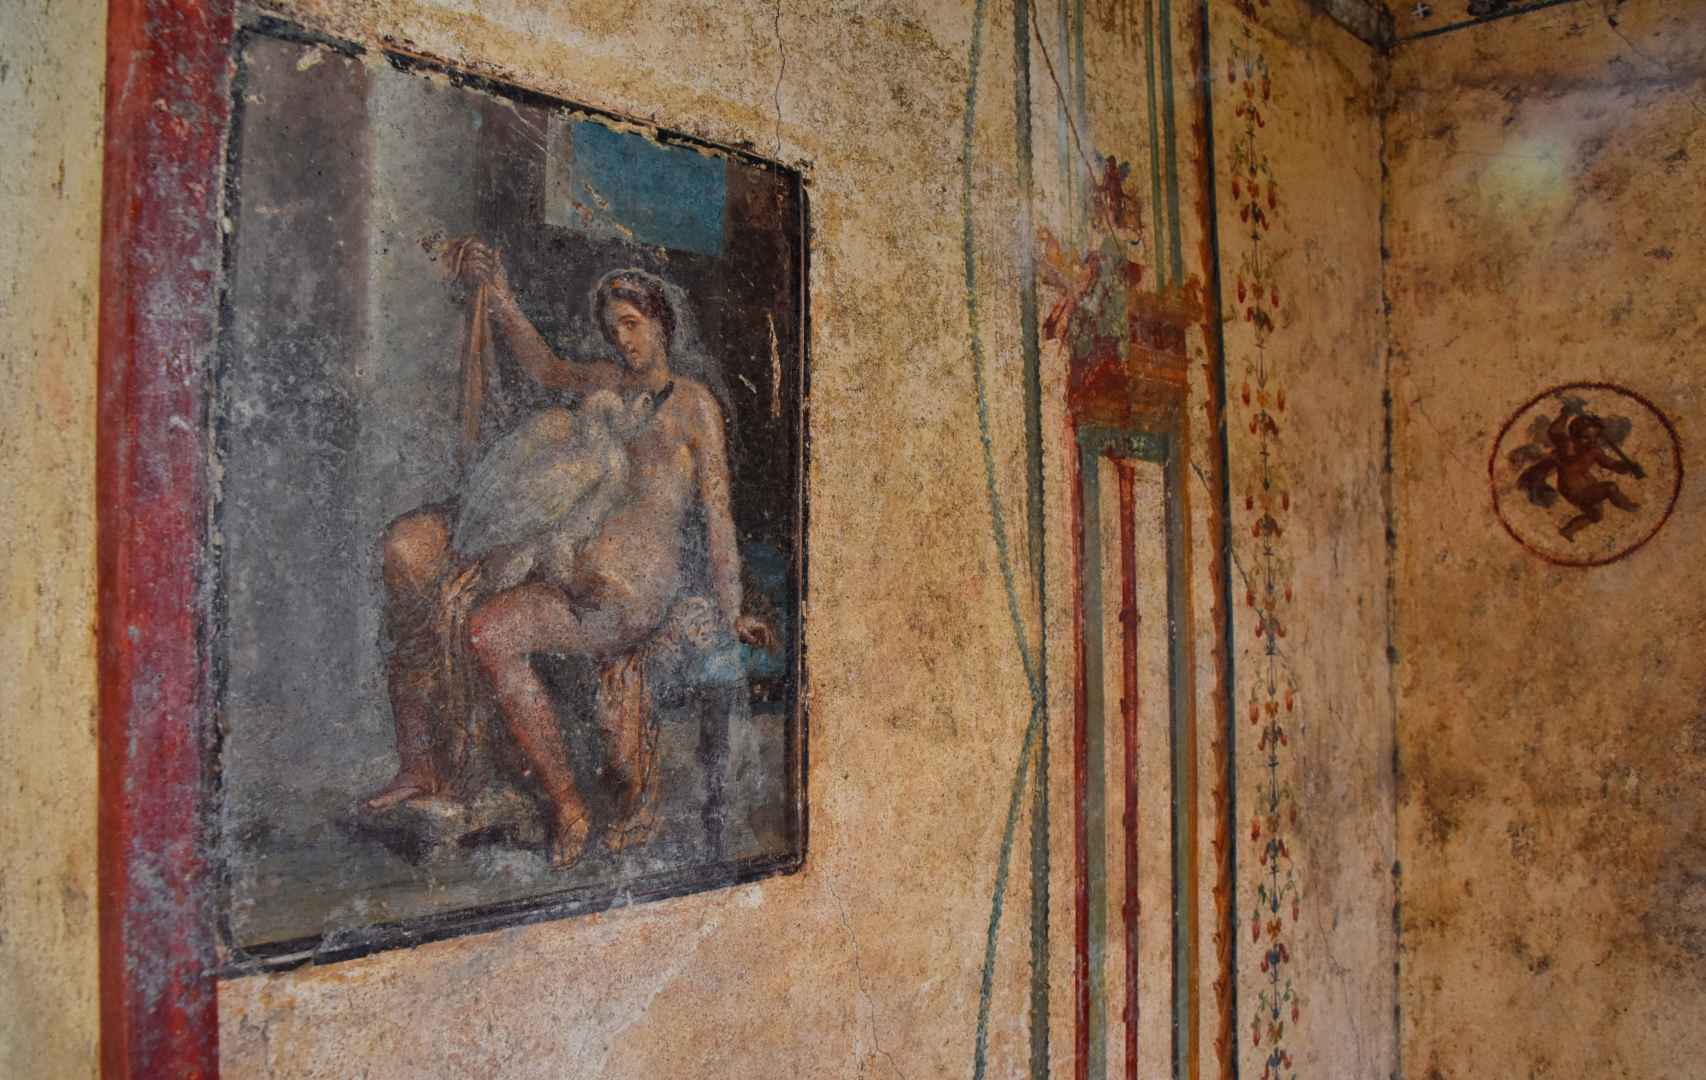 Interior de la casa de Leda y el cisne y su famoso fresco.